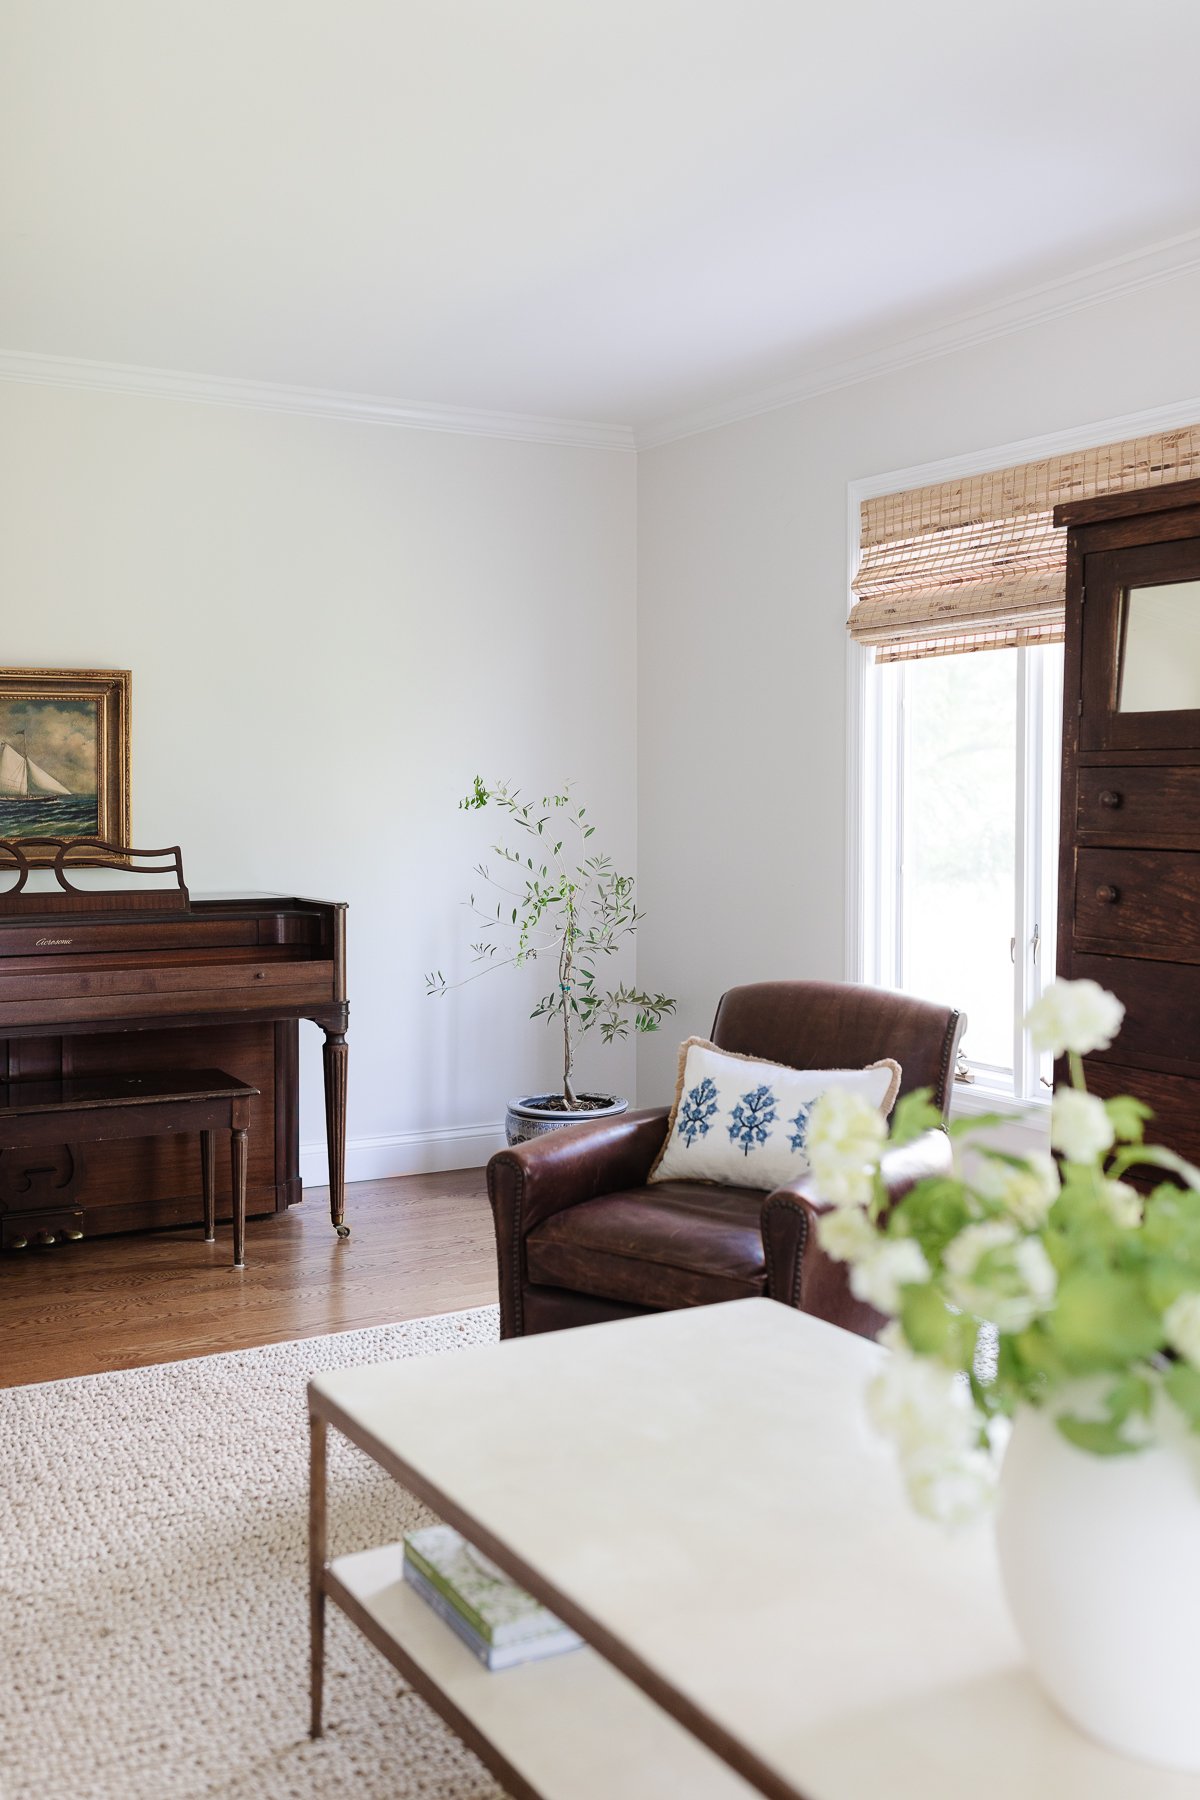 Una sala familiar con un piano antiguo y un armario, sillas de cuero y persianas de bambú.